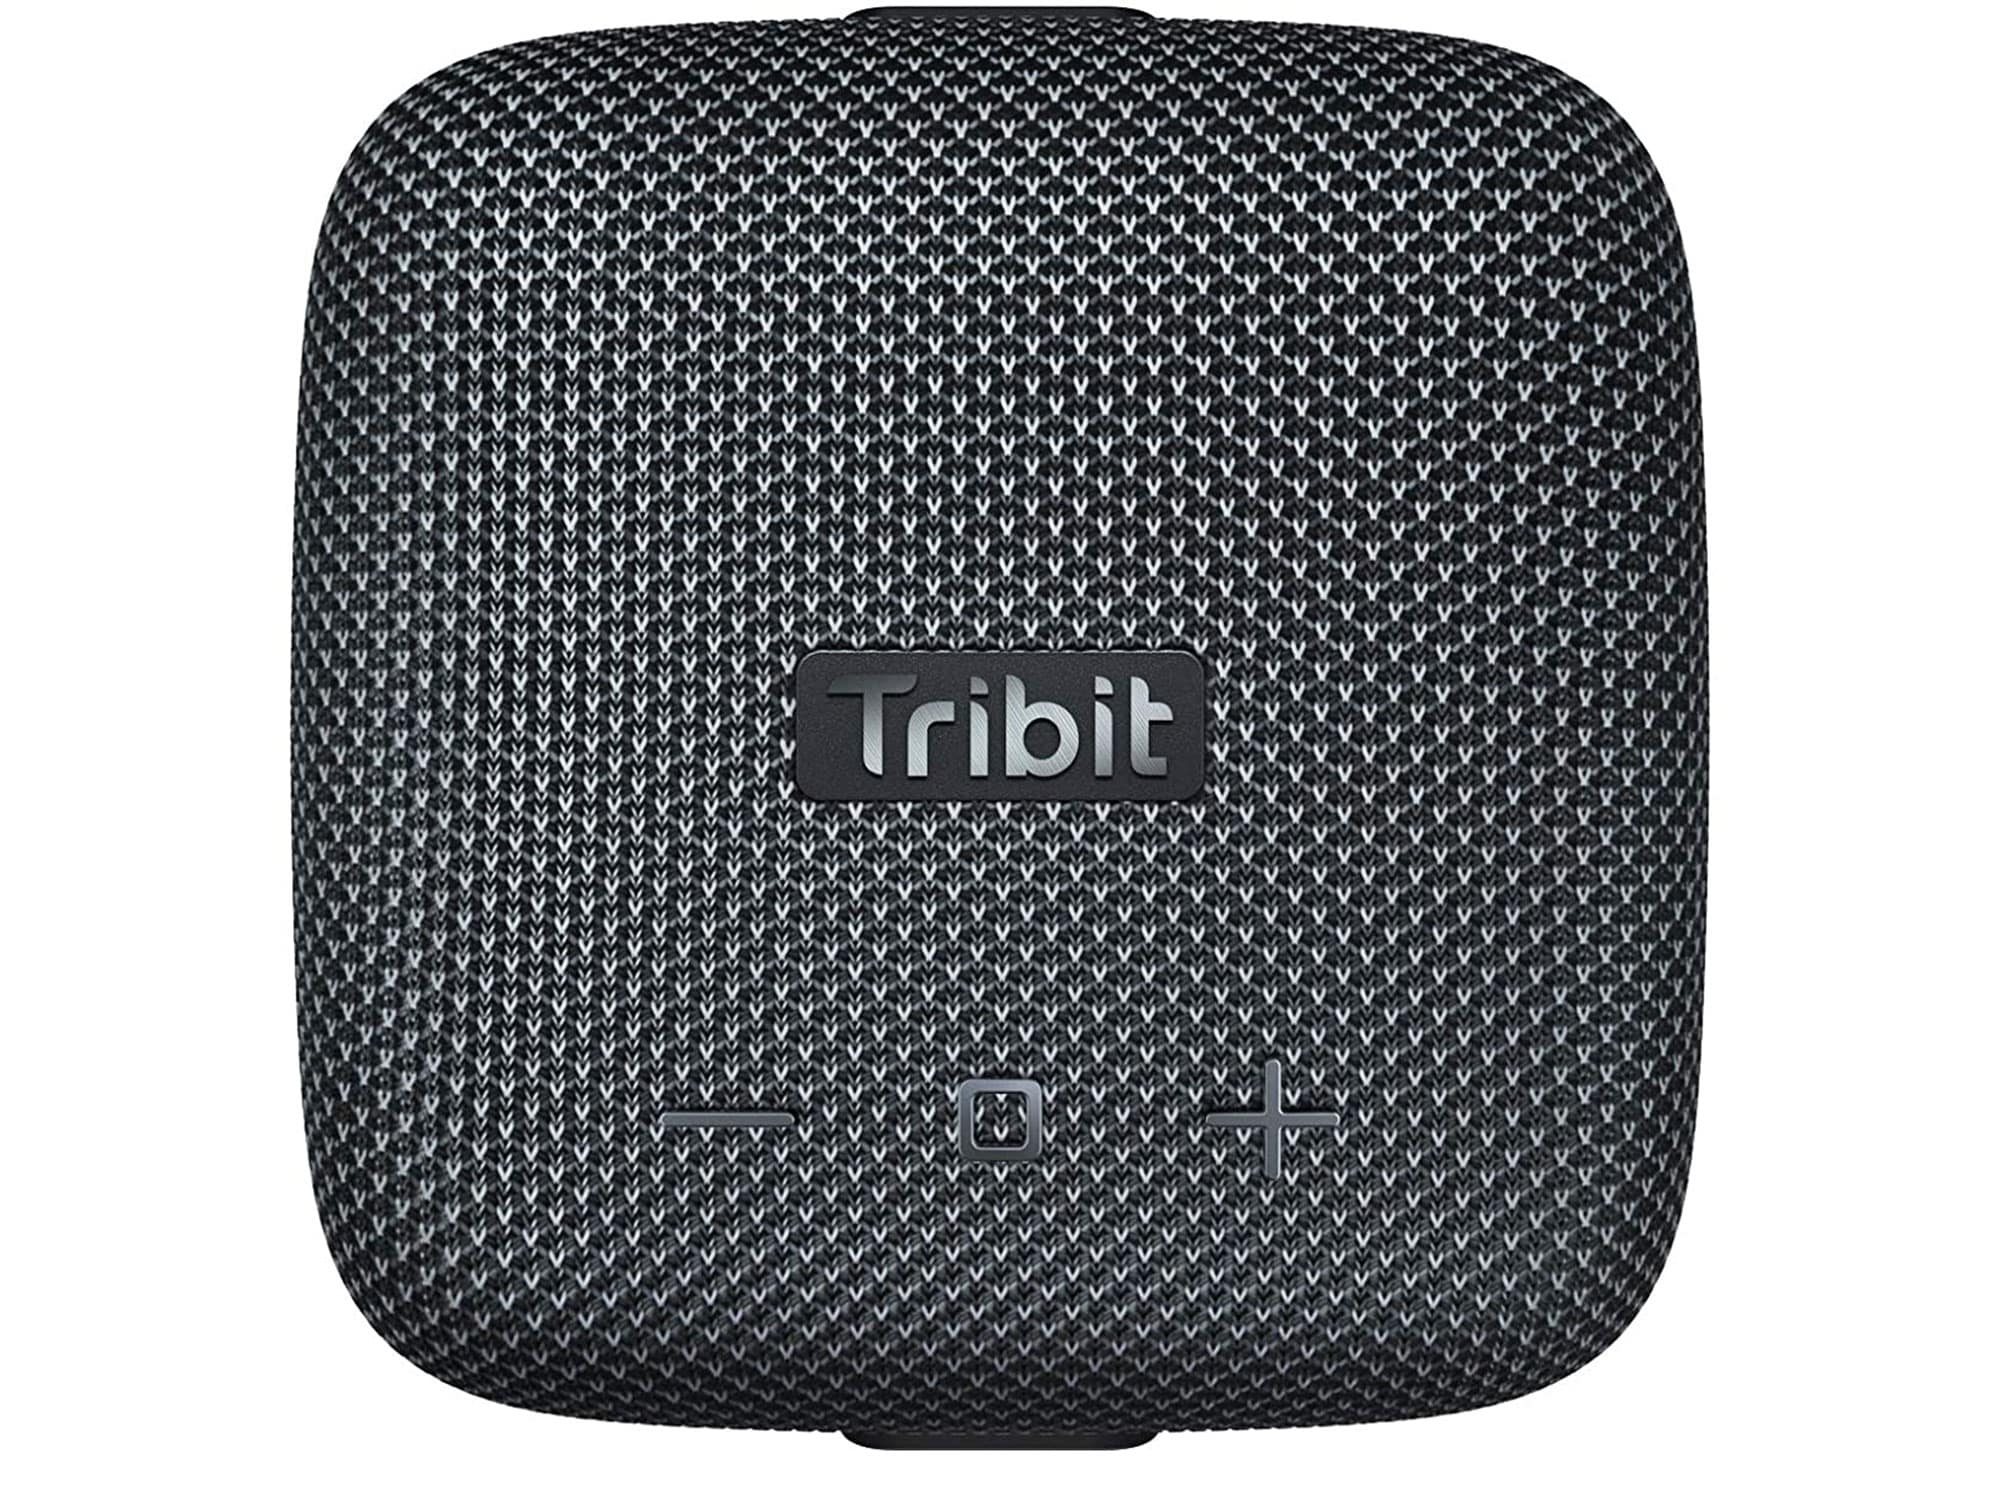 Tribit speaker